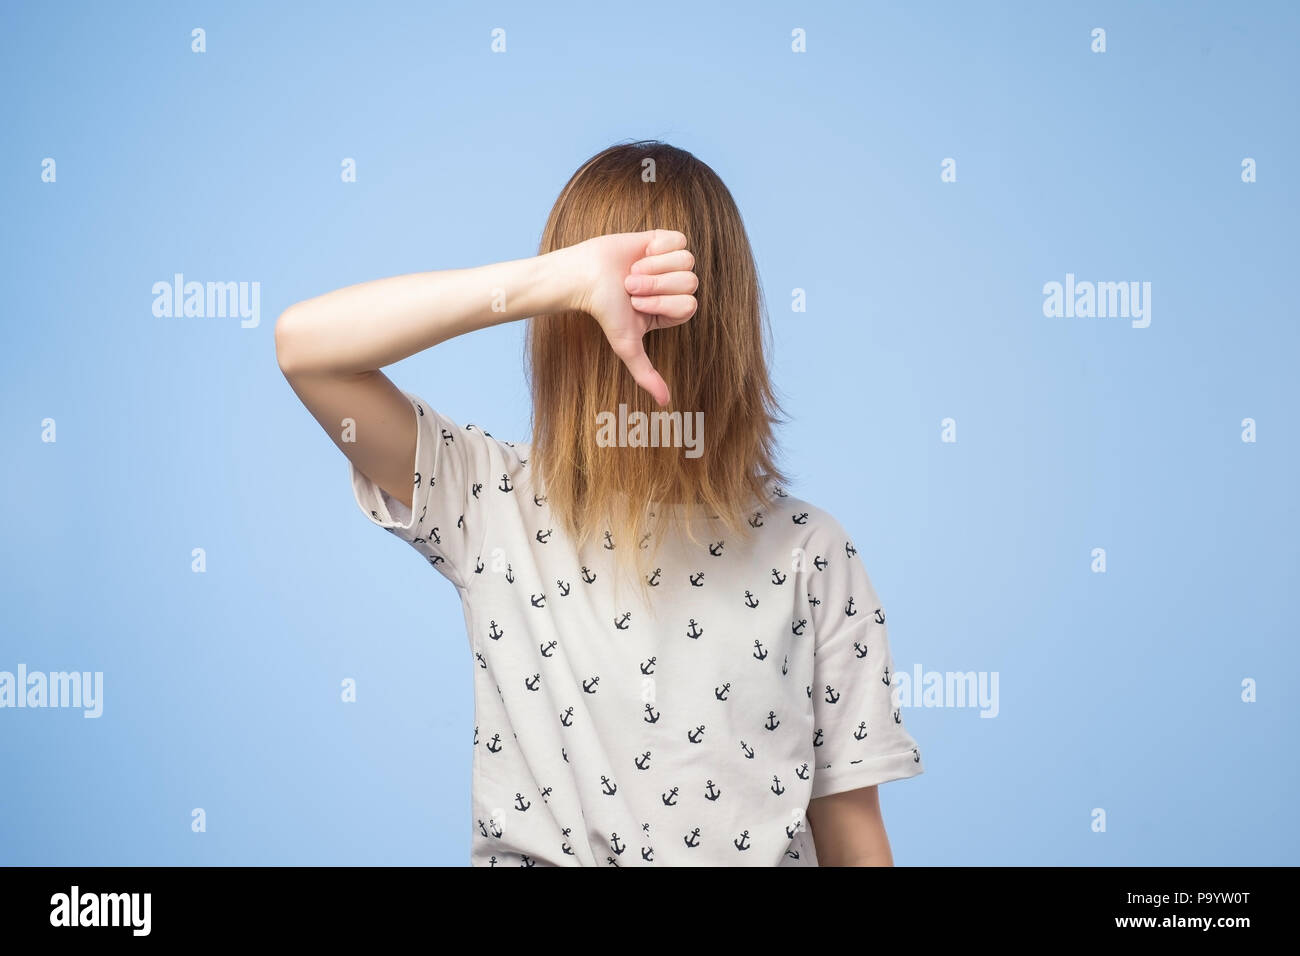 Europäische Frau zeigt Missbilligung Zeichen, gibt Daumen nach unten Geste, Abneigungen, hat etwas ekelhaft Ausdruck Stockfoto